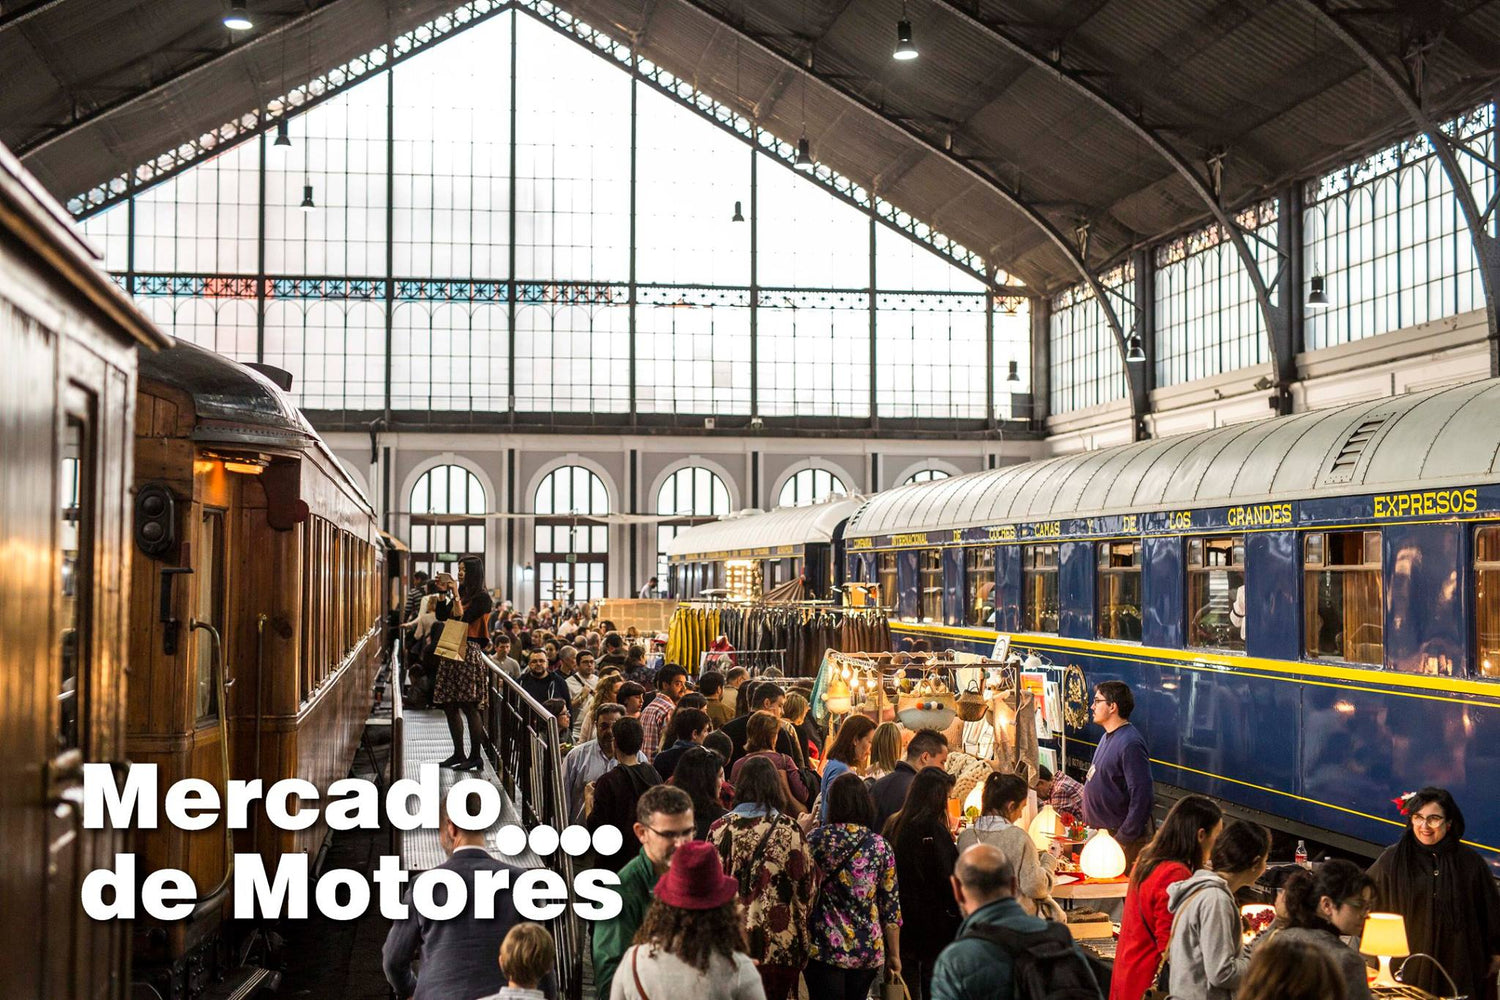 foto del mercado de motores dentro de una estación, entre los vagones, con comerciantes y turistas.